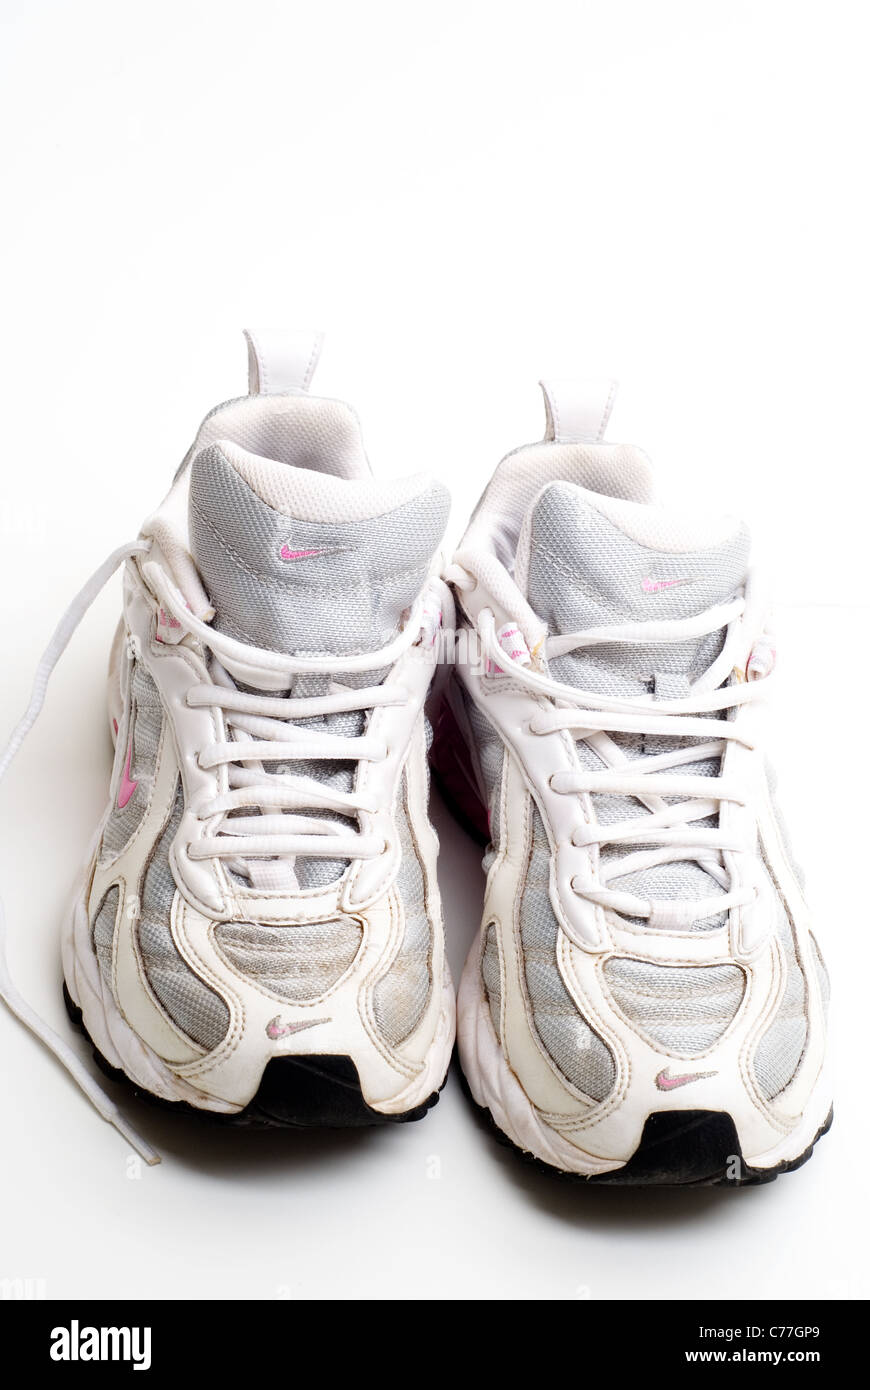 Vieille paire de chaussures de course Nike usés Photo Stock - Alamy